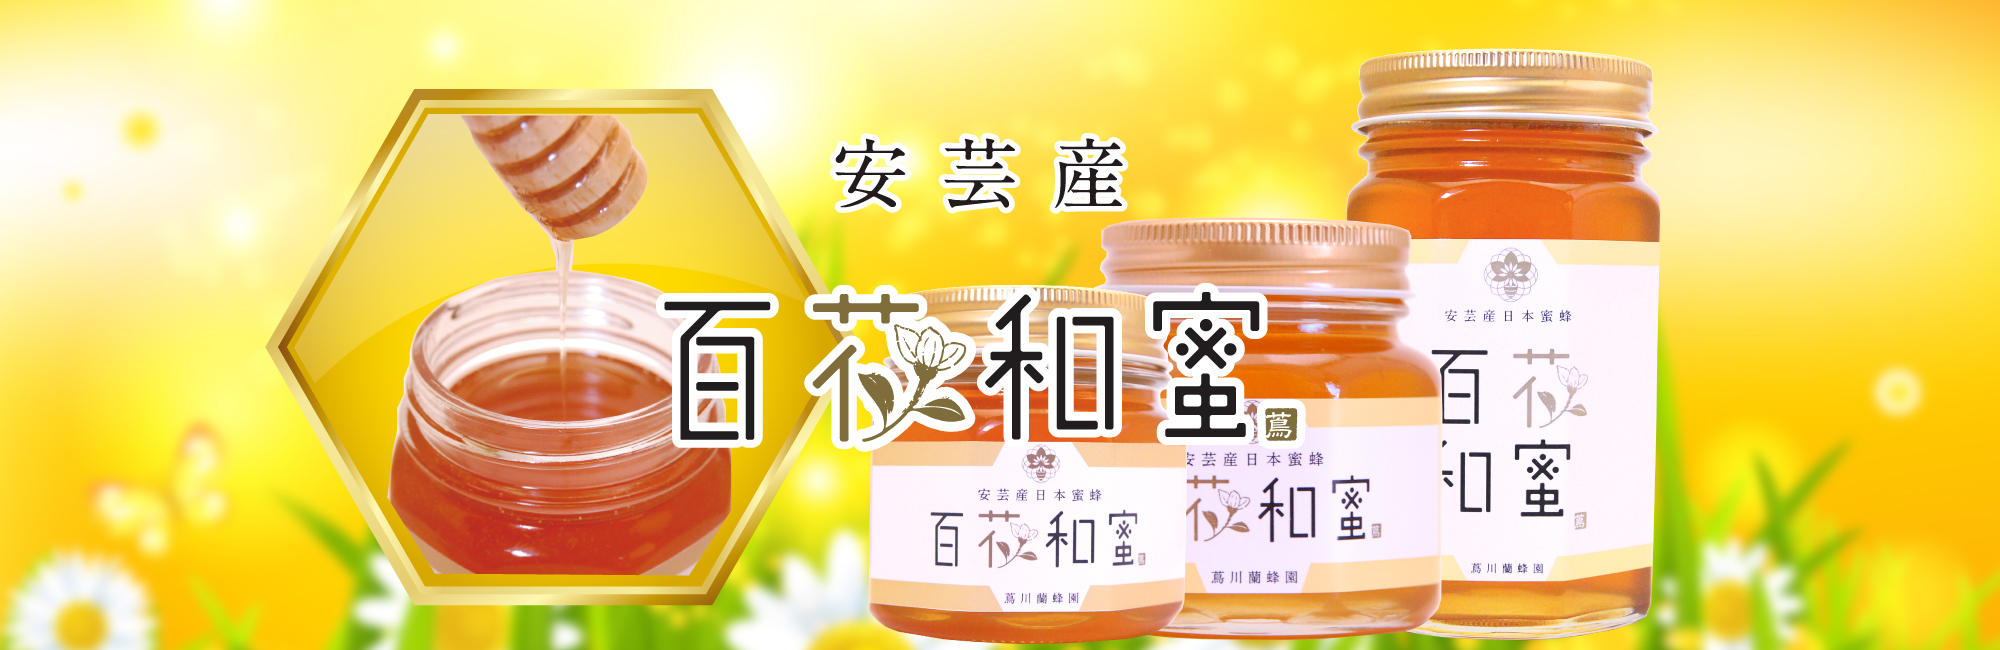 日本ミツバチの蜂蜜 蔦川蘭蜂園 - 安芸産蜂蜜 百花和蜜の蔦川蘭蜂園です